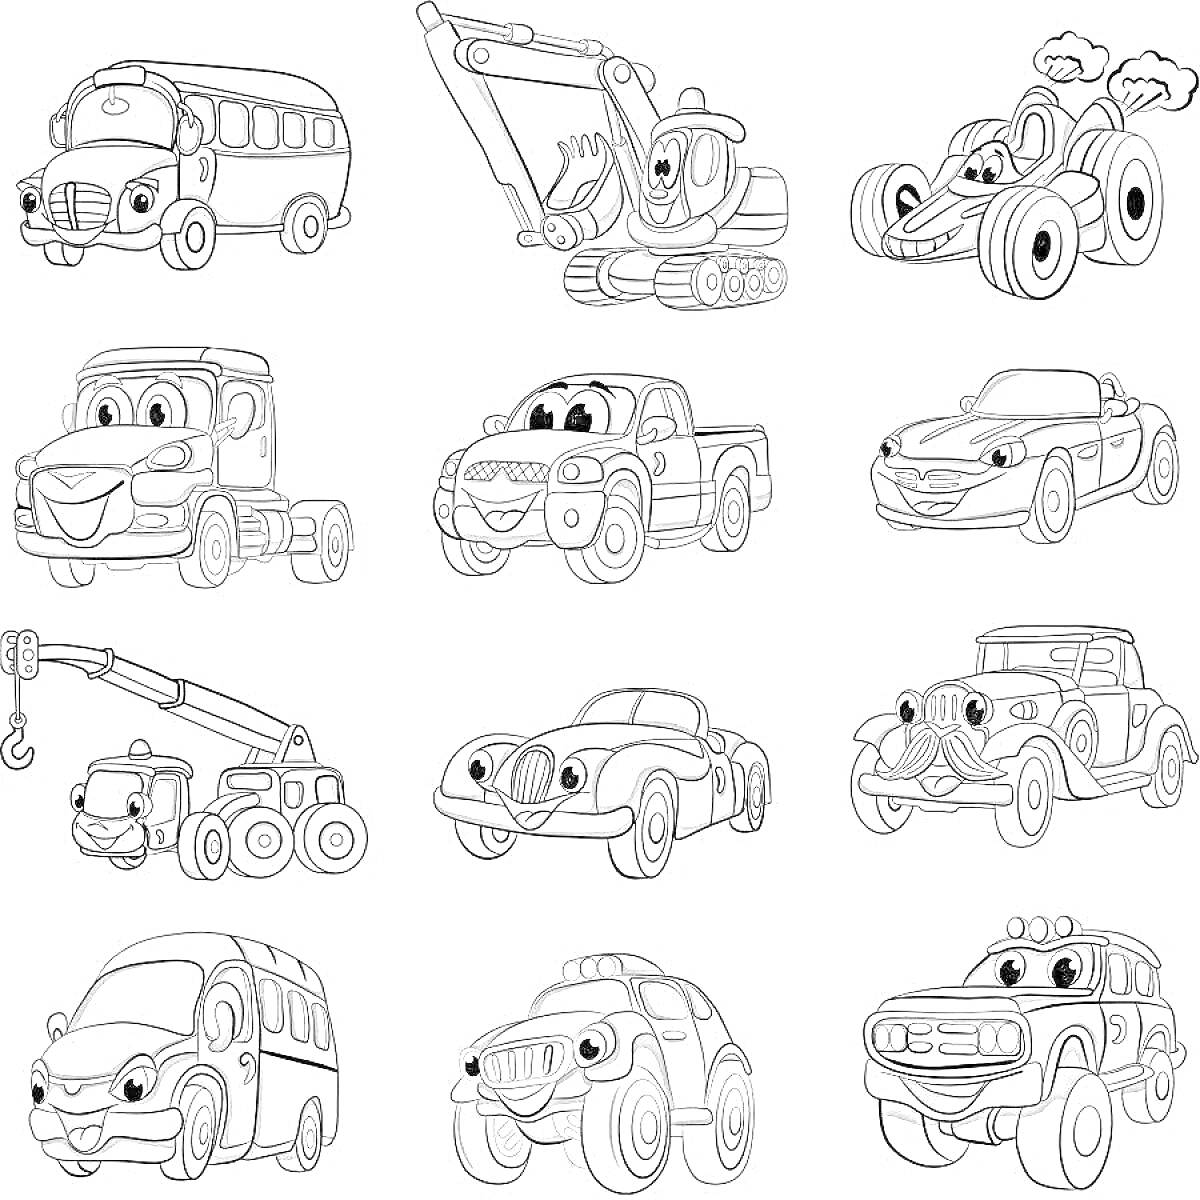 Раскраска Раскраска с множеством машин, включая автобус, экскаватор, внедорожник, грузовики, автомобиль, кран, гоночную машину, и микроавтобус с разными выражениями лиц